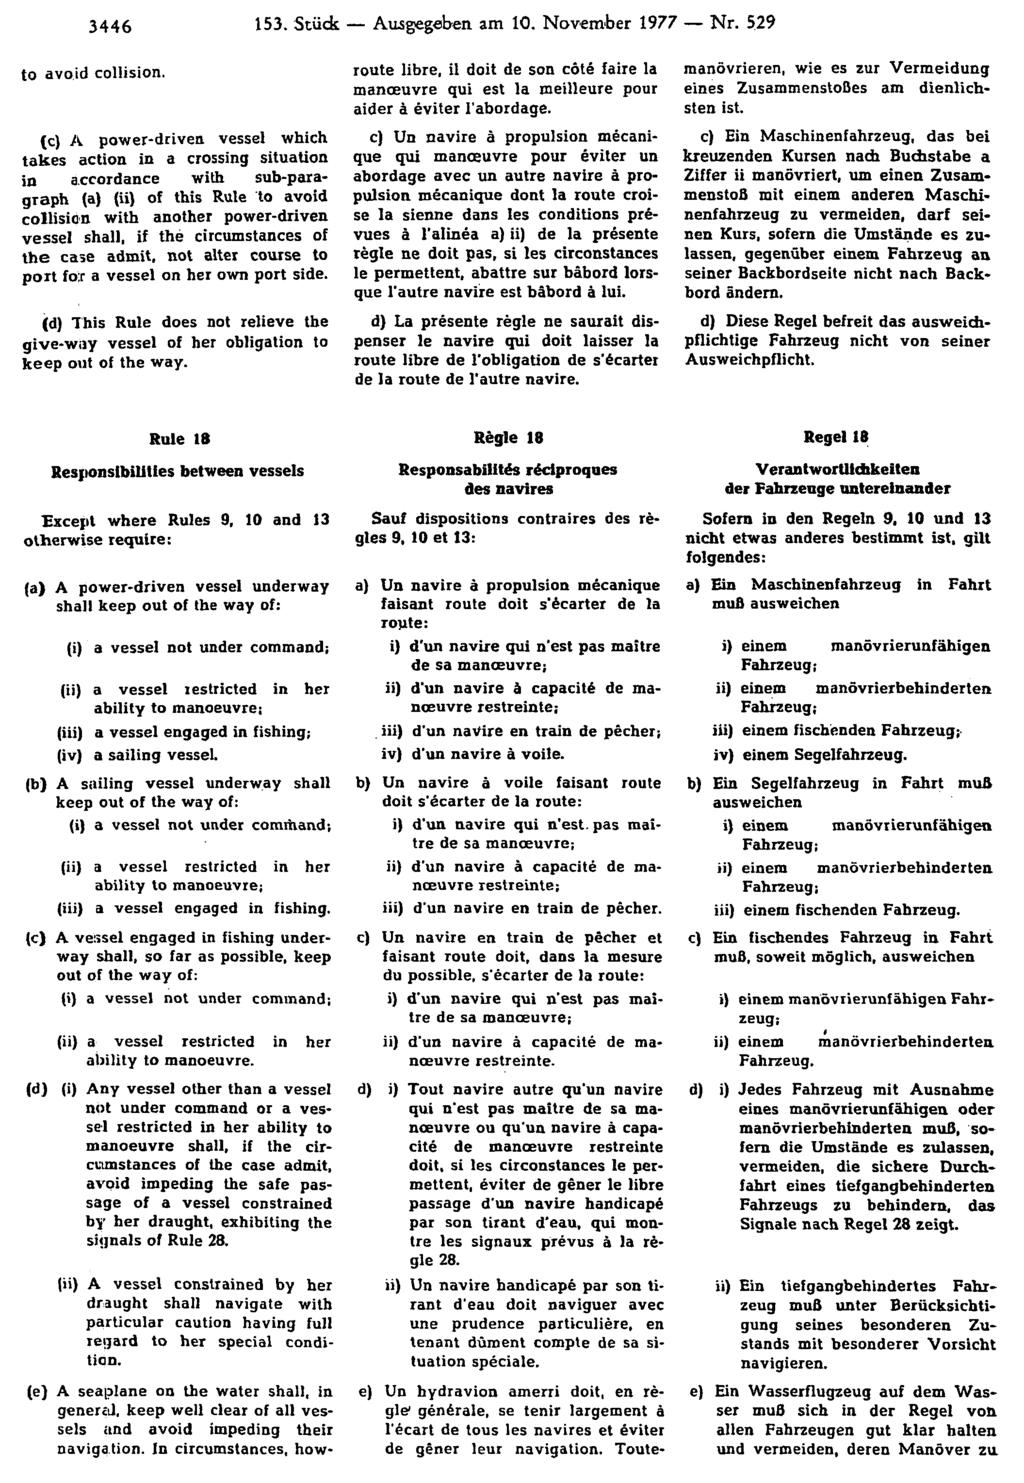 3446 153. Stück Ausgegeben am 10. November 1977 Nr. 529 manövrieren, wie es zur Vermeidung eines Zusammenstoßes am dienlichsten ist.